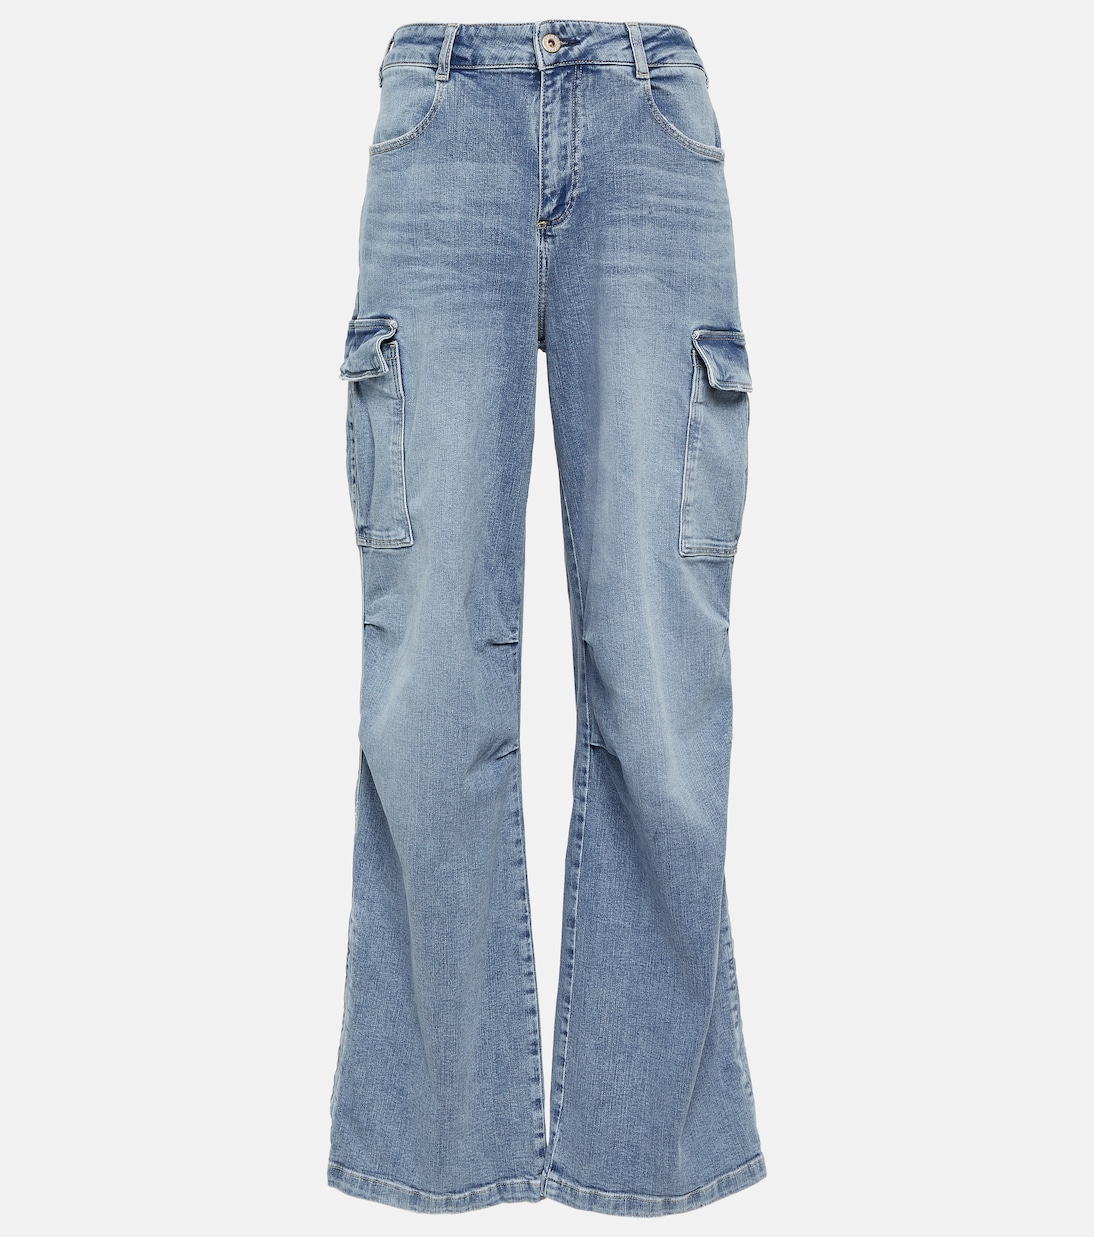 Широкие джинсы карго с высокой посадкой Ag Jeans, синий широкие джинсы с высокой посадкой nermorosa joe s jeans синий